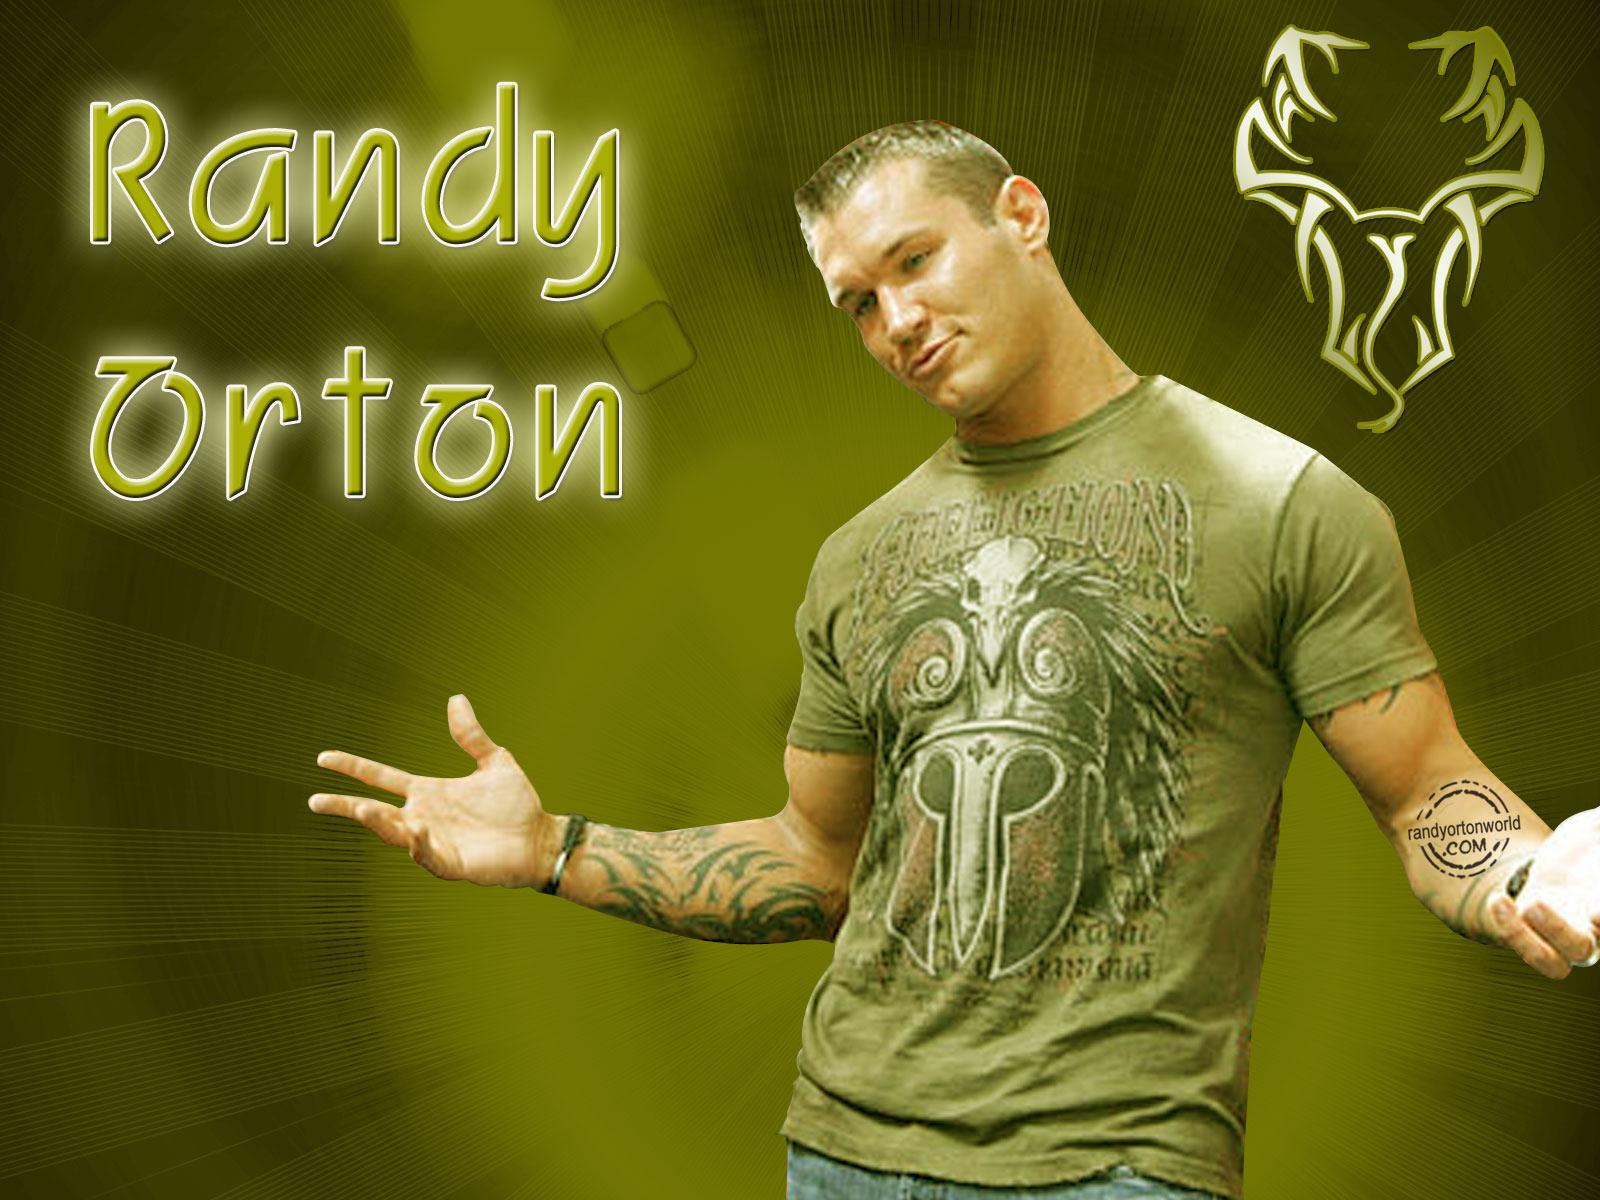 Free download HD Randy Orton Wallpaper [1600x1200]